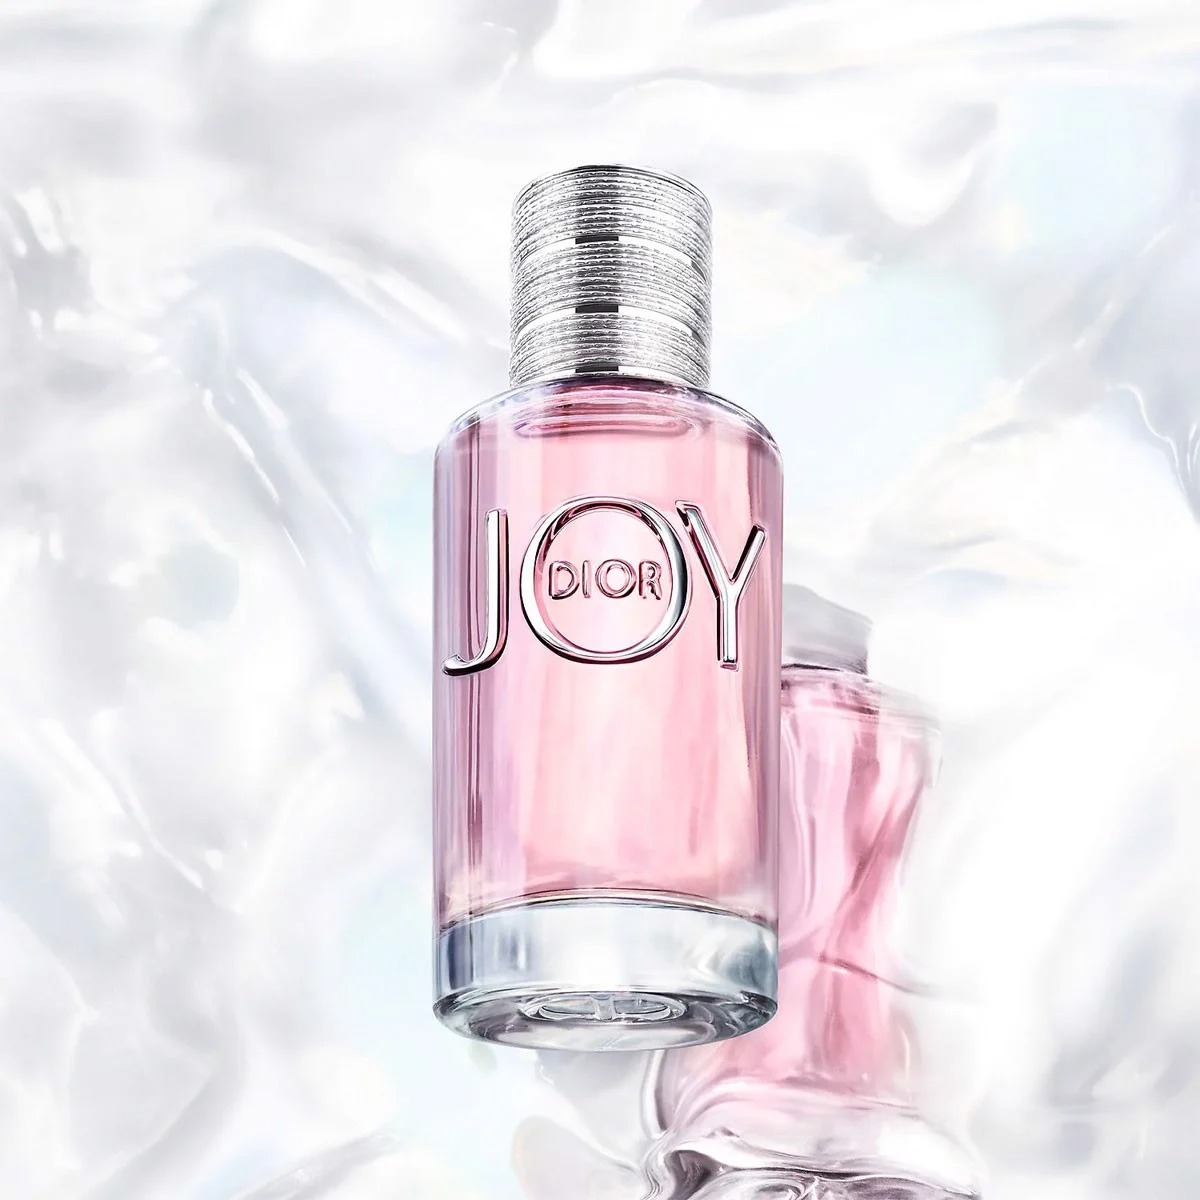 Nước hoa Dior Joy có thơm không Địa chỉ mua full box nước hoa Dior Joy